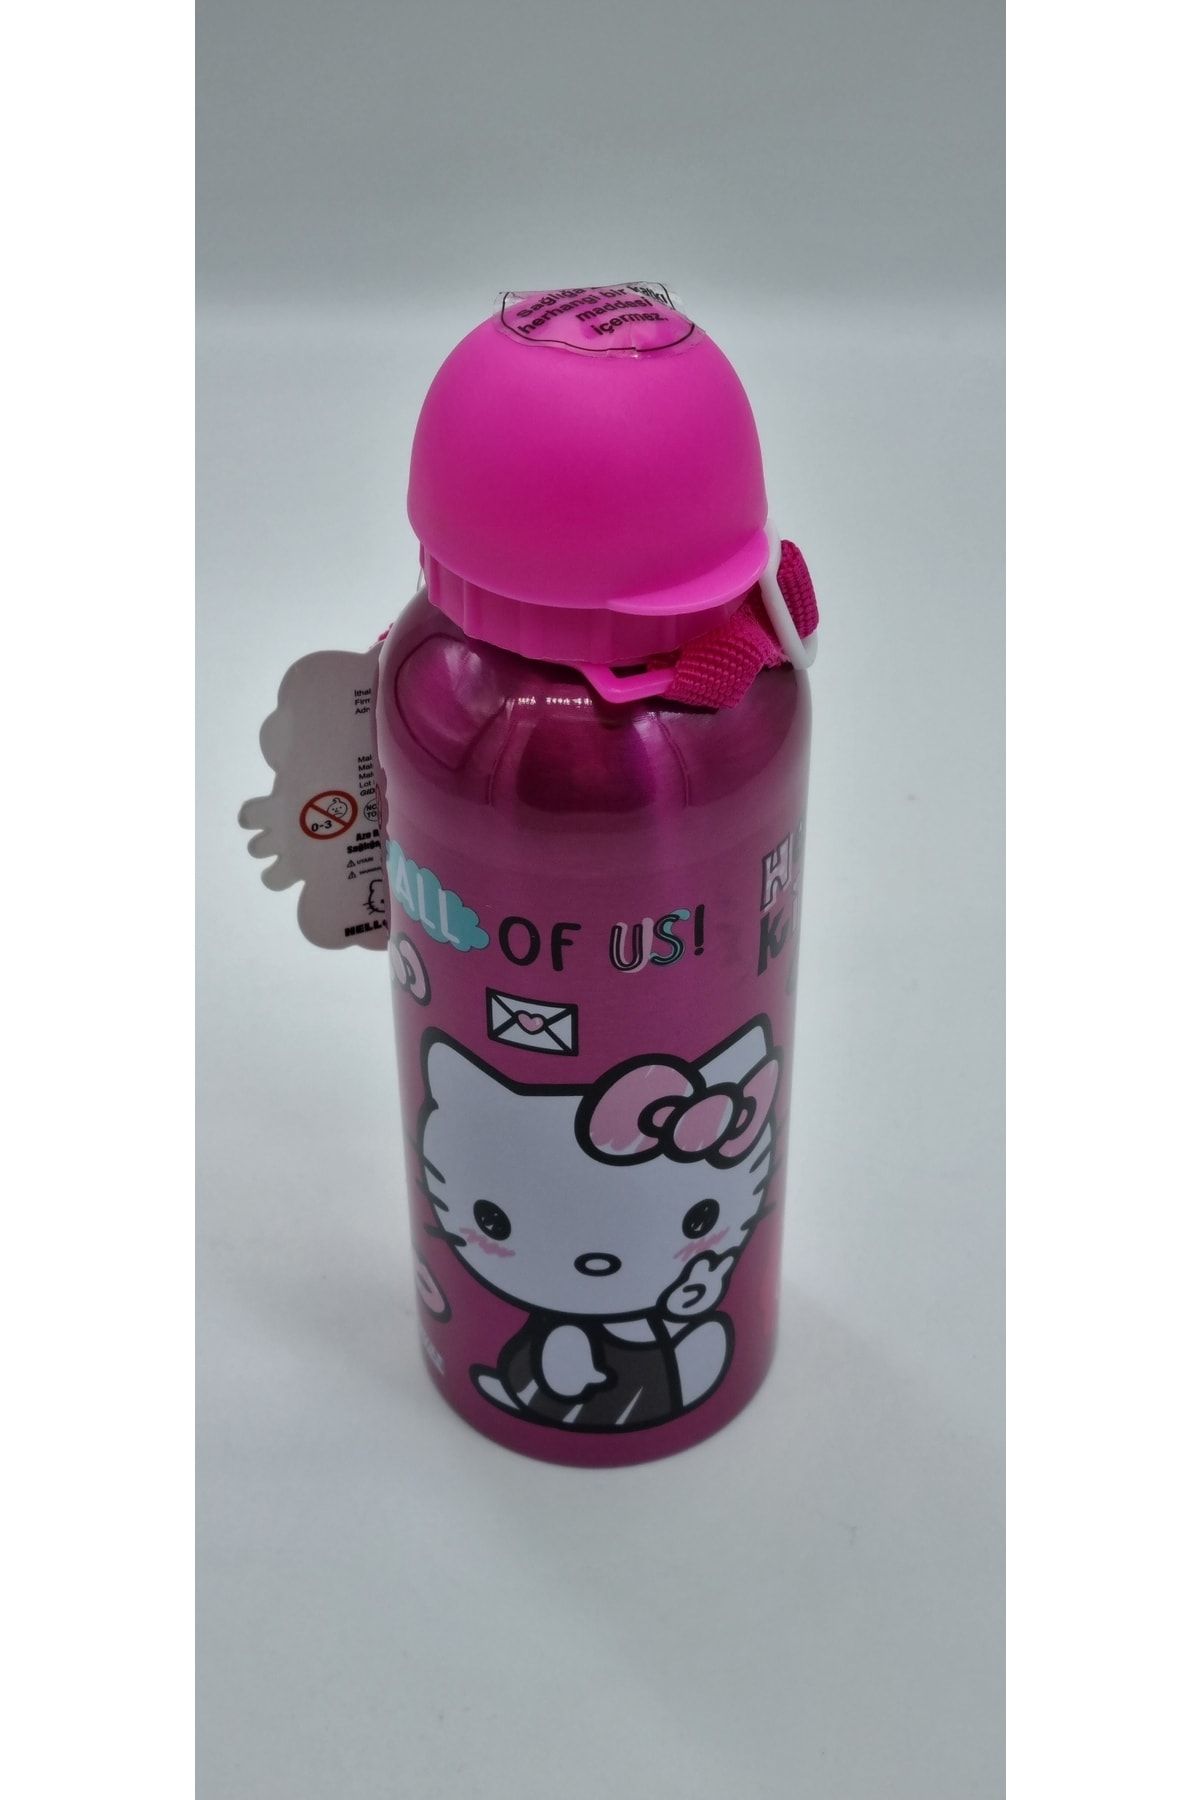 Hakan Çanta Hello Kitty Çelik Matara&suluk Pembe Renk